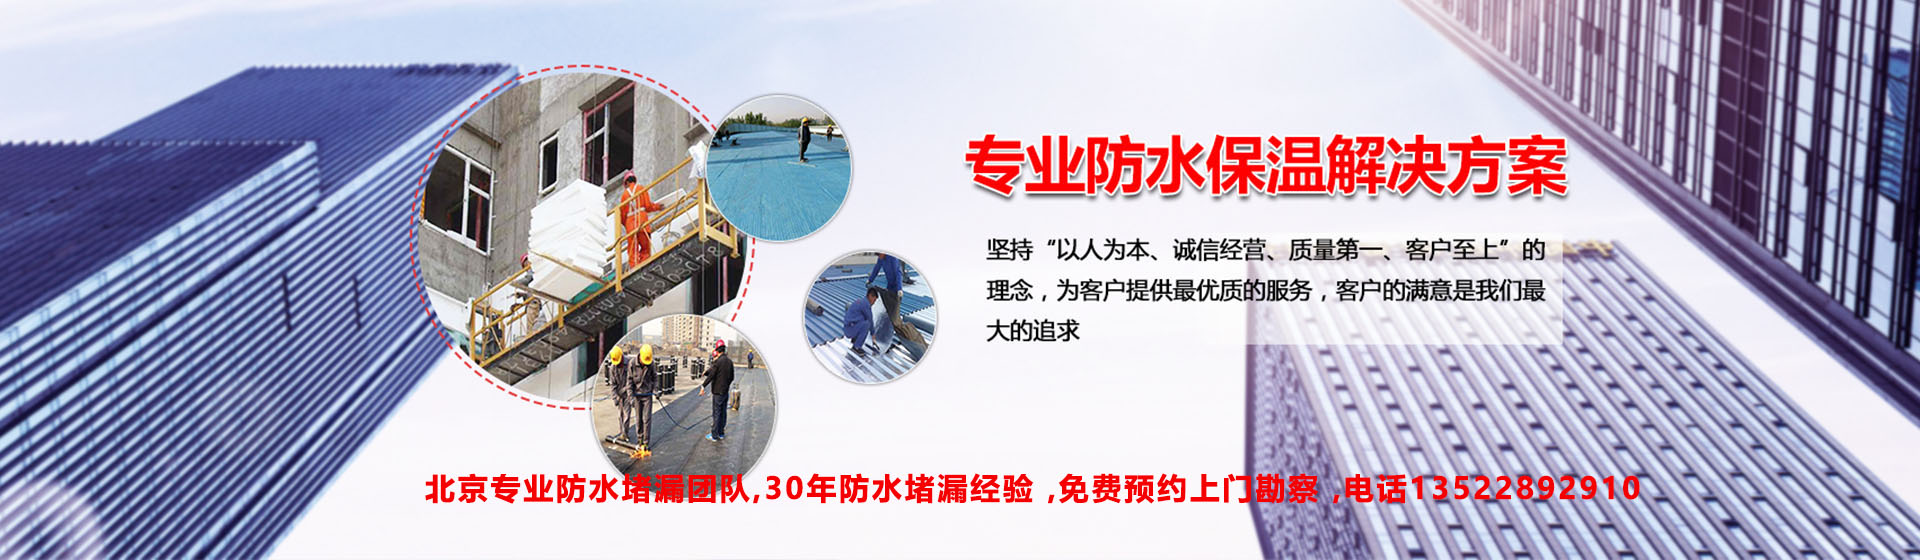 北京海淀区防水公司